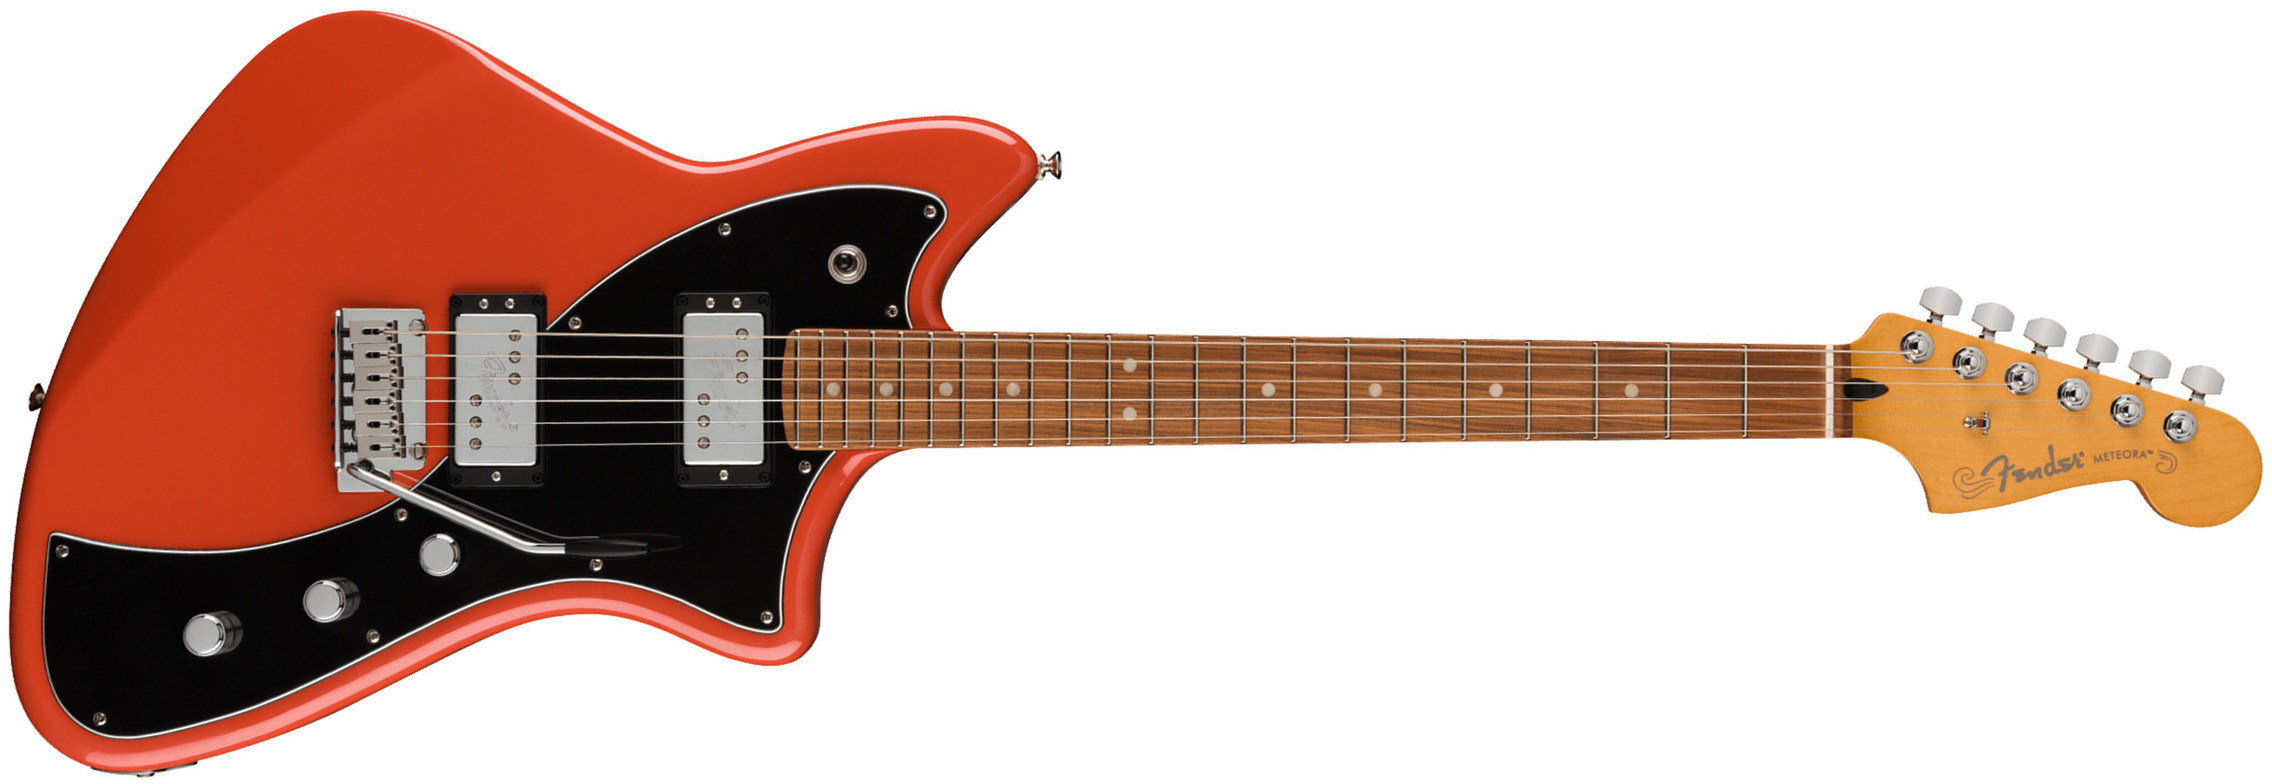 Fender Meteora Player Plus Hh Mex 2023 2s Ht Pf - Fiesta Red - Guitarra electrica retro rock - Main picture